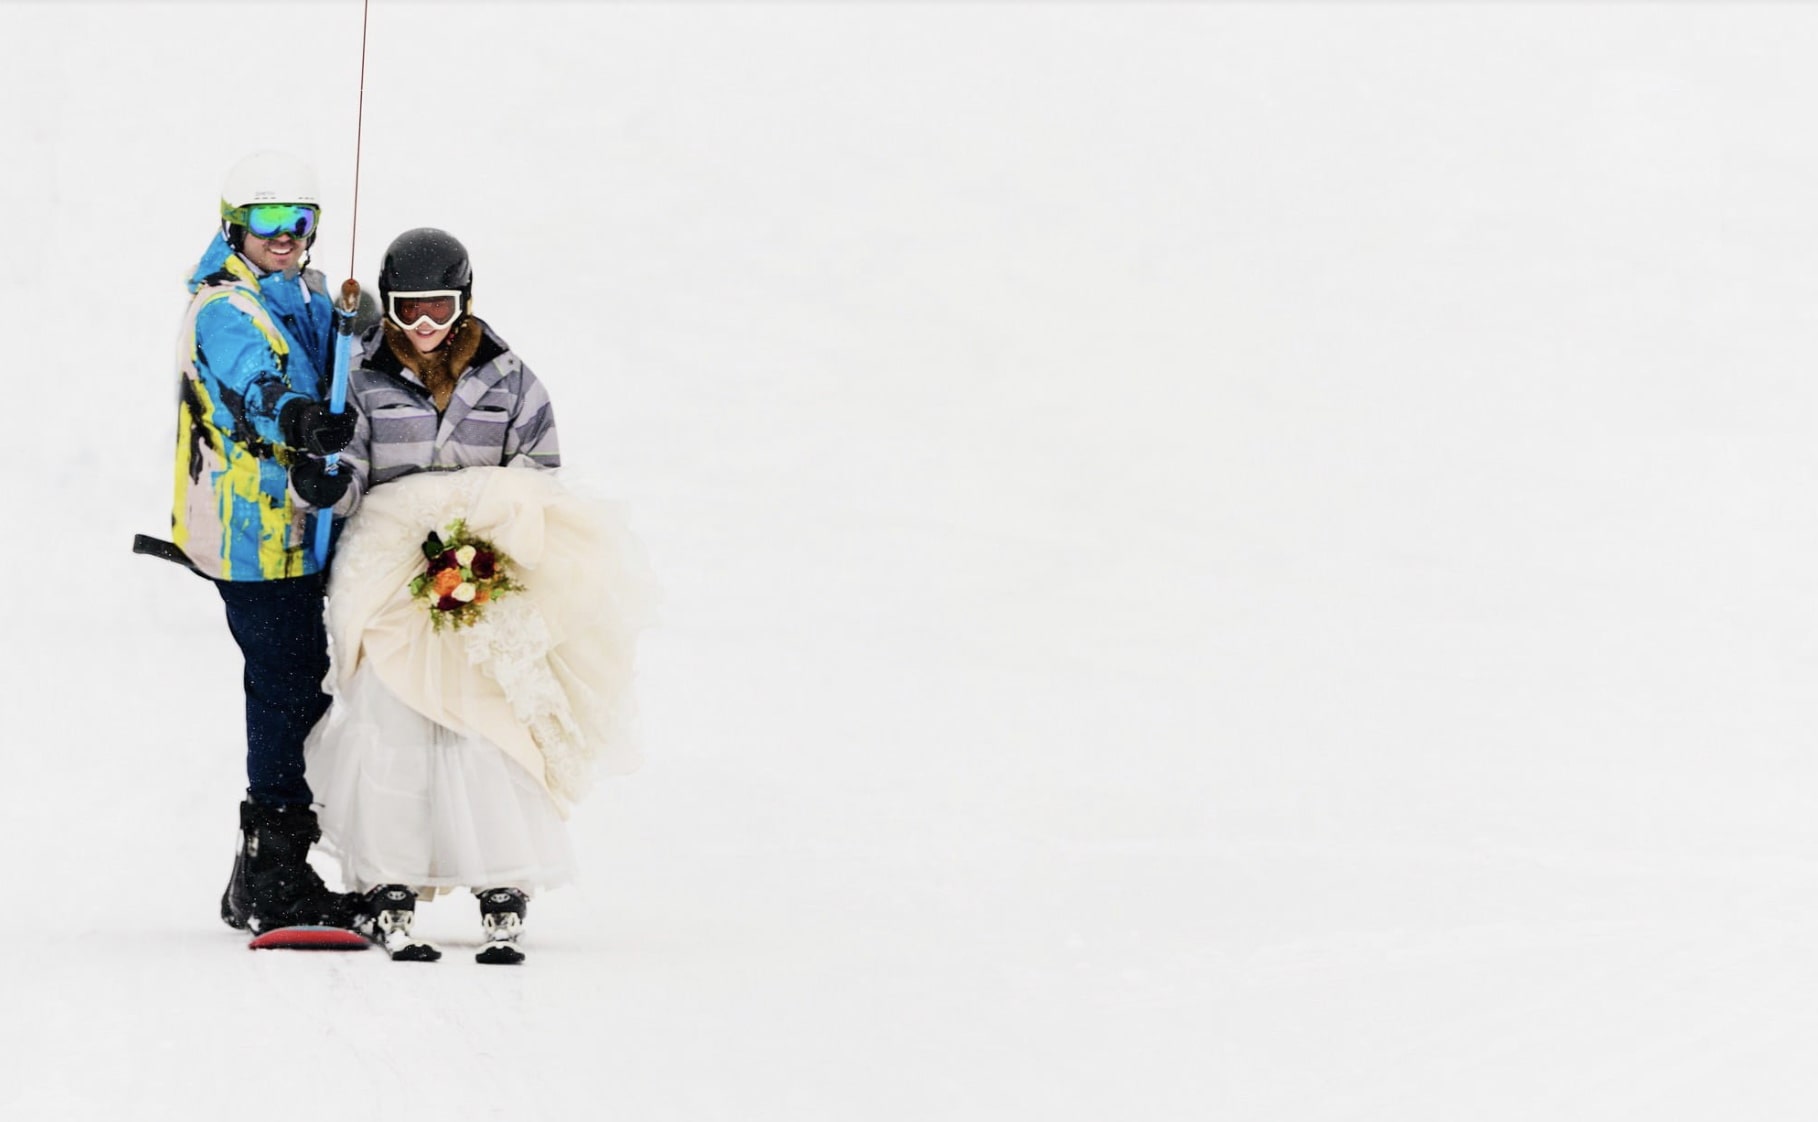 Ski wedding